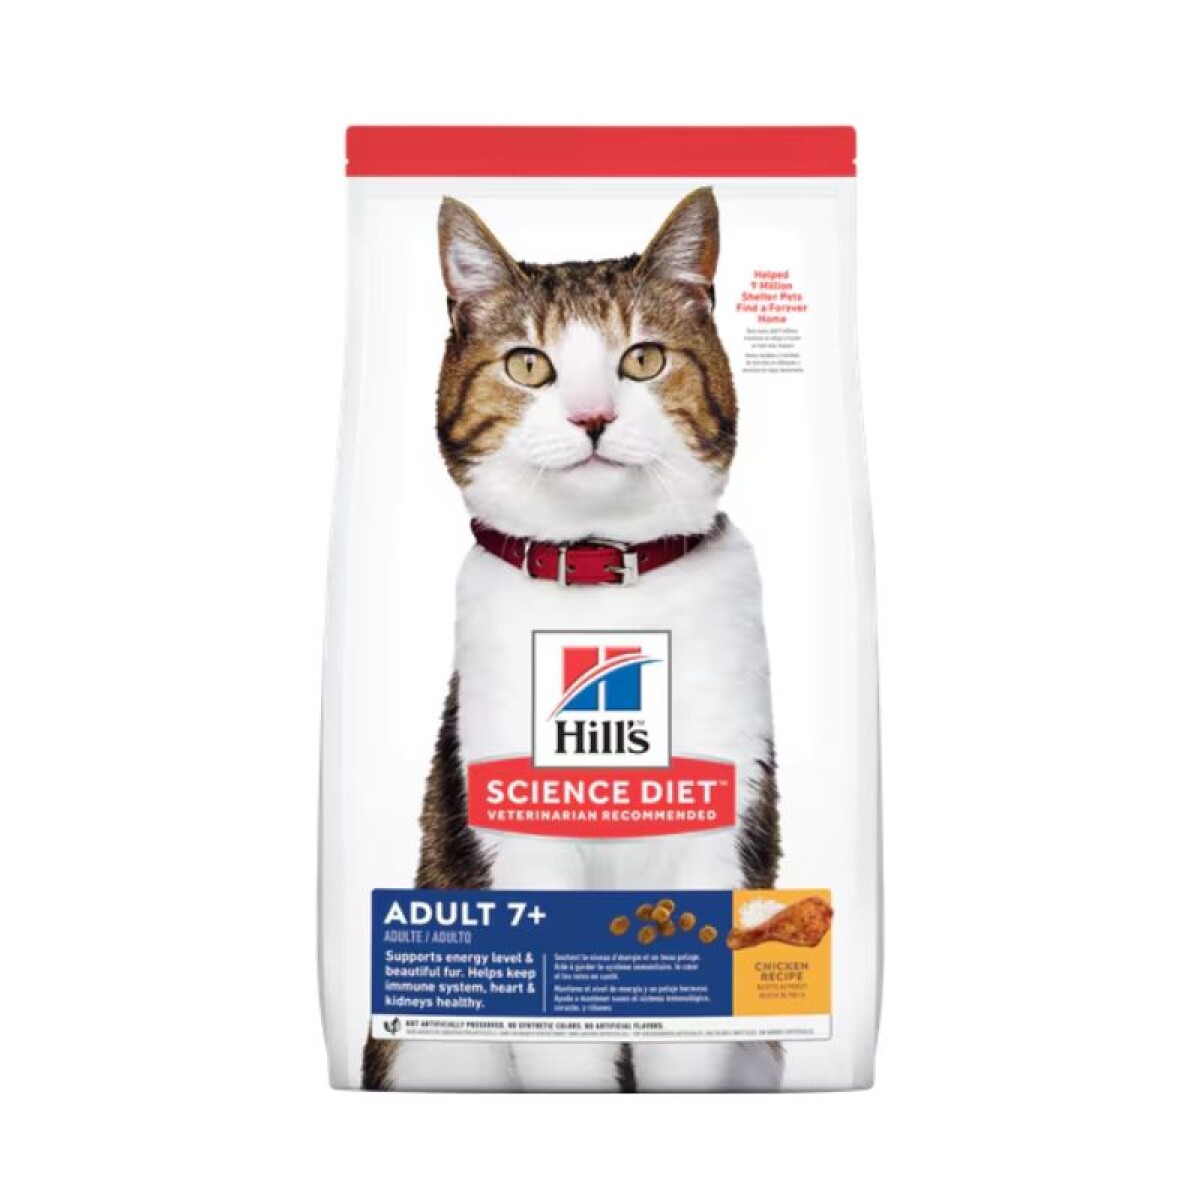 HILLS ADULT CAT +7 1.8KG - Hills Adult Cat +7 1.8kg 